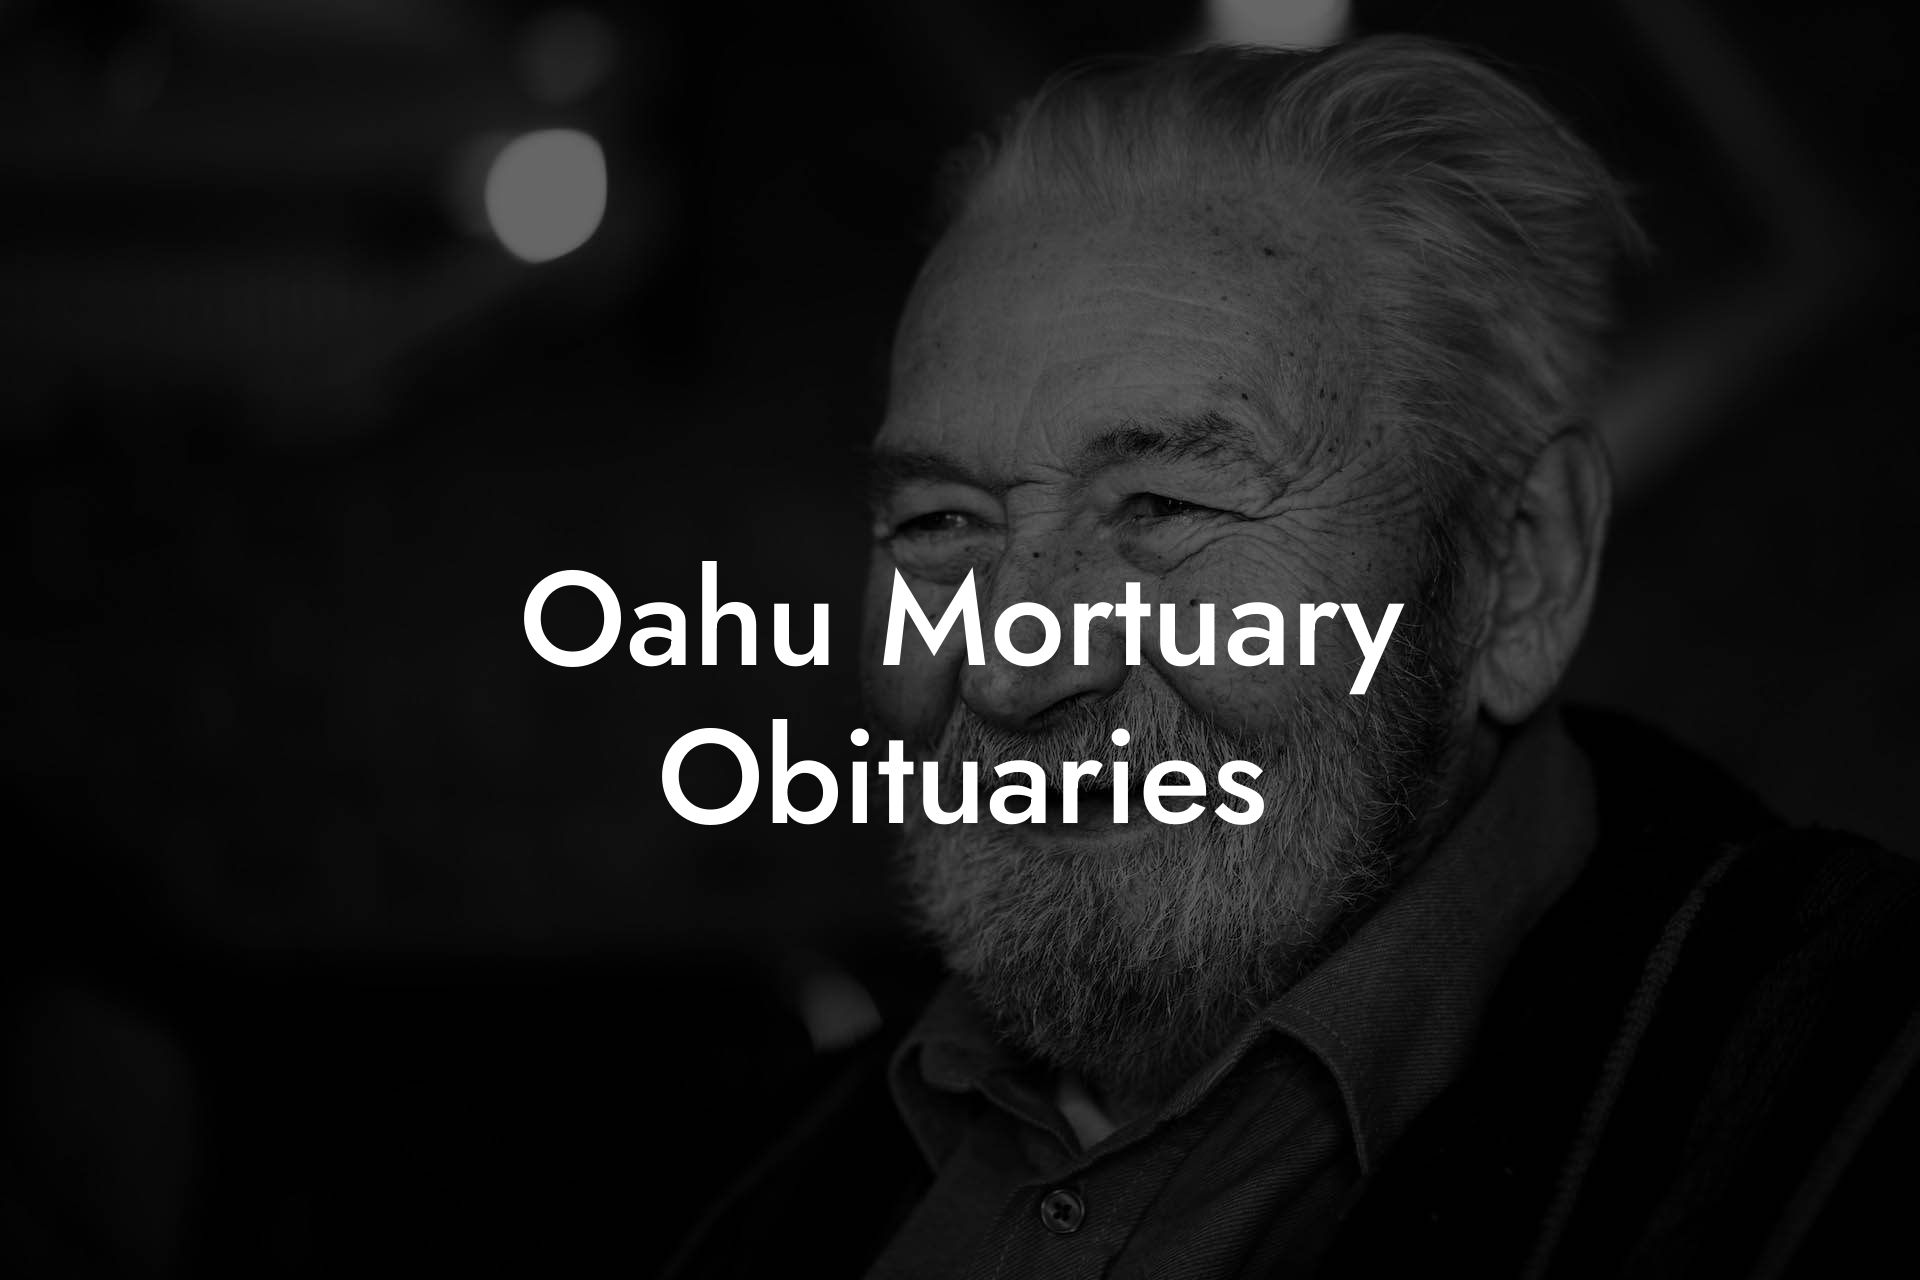 O'AHU MORTUARY Obituaries